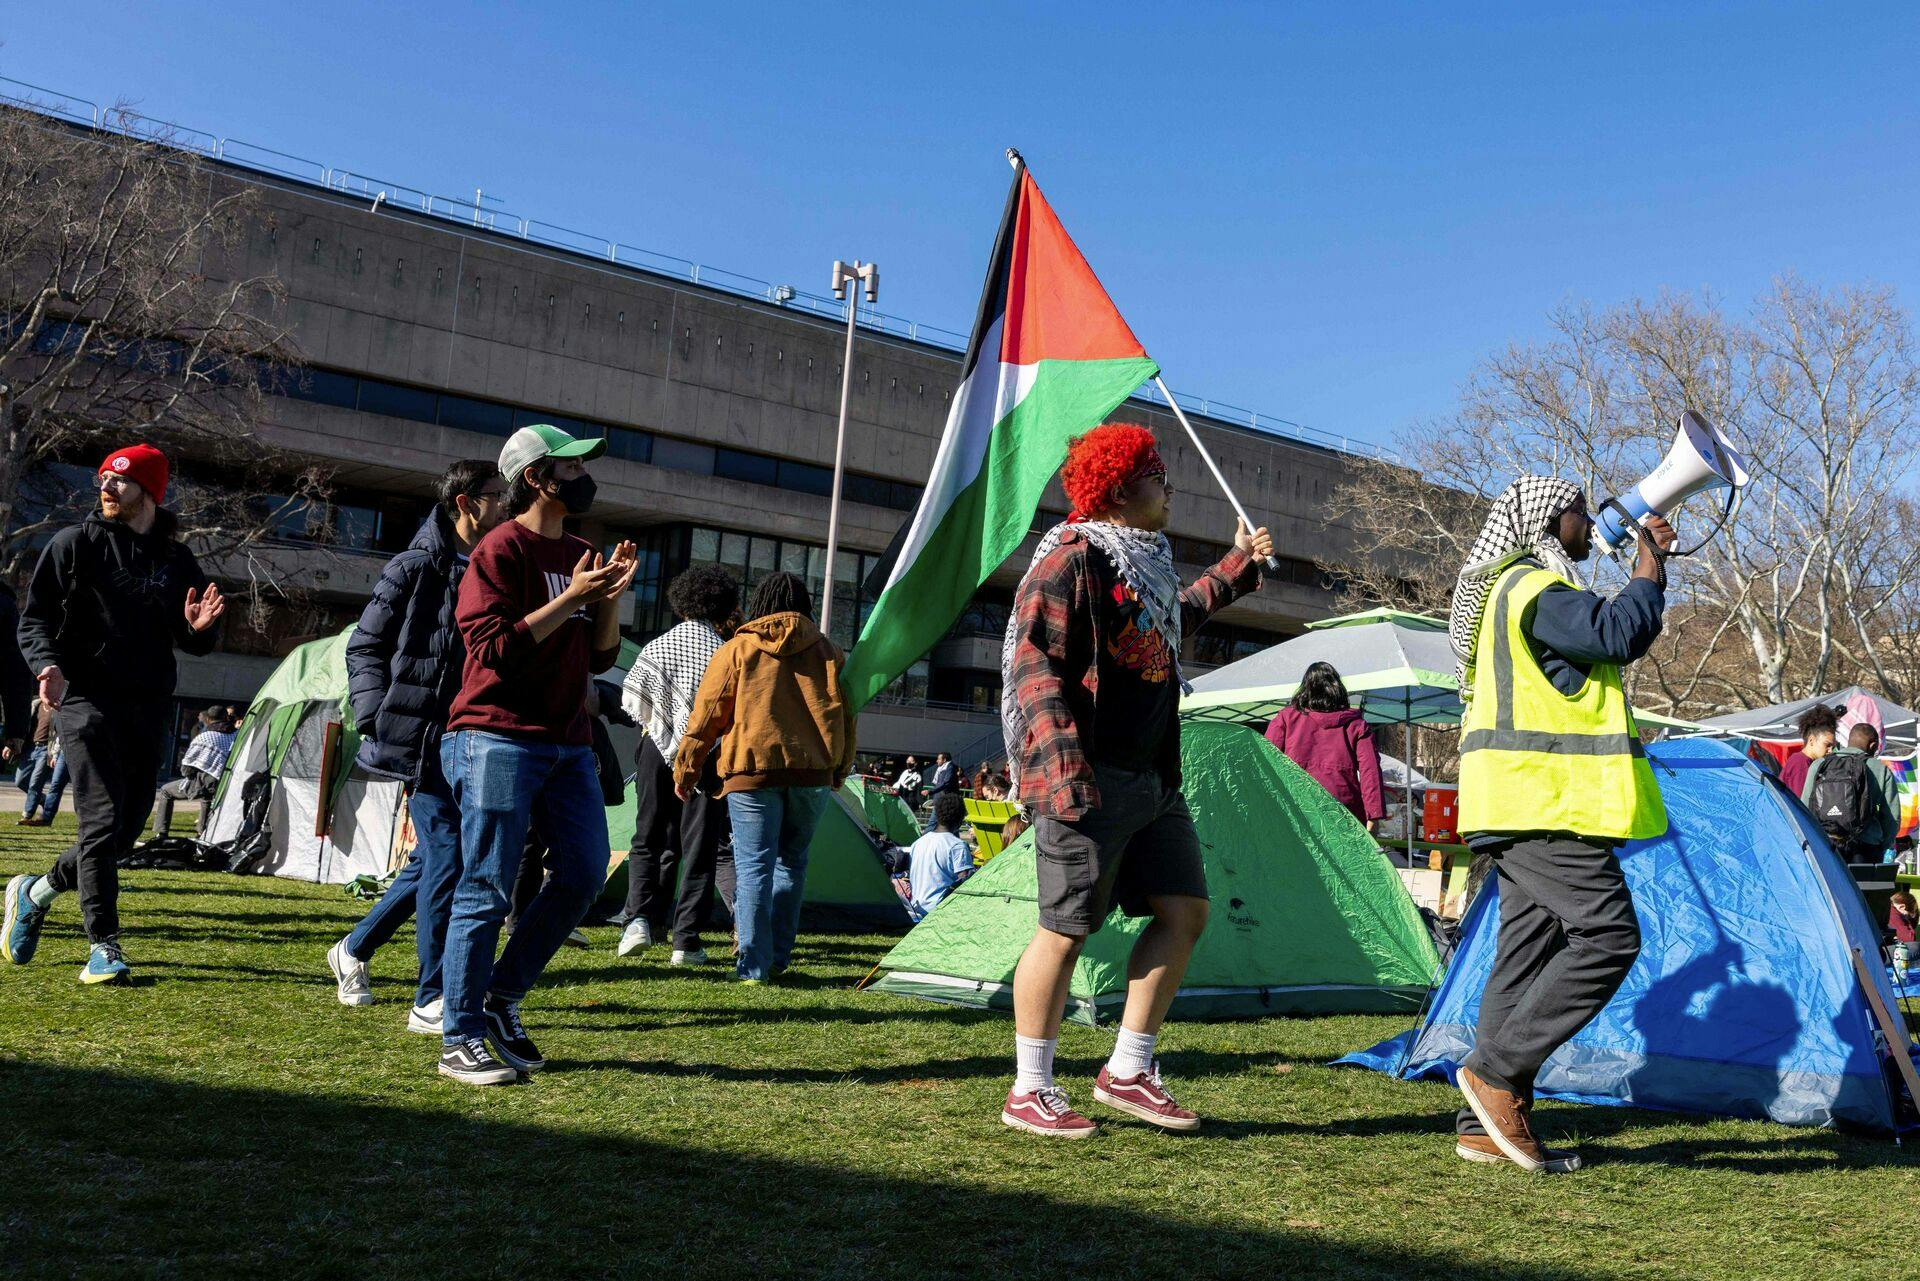 Omkring 100 personer blev tilbageholdt, da politiet ryddede en pro-palæstinensisk protestlejr på et universitetcampus i Boston.